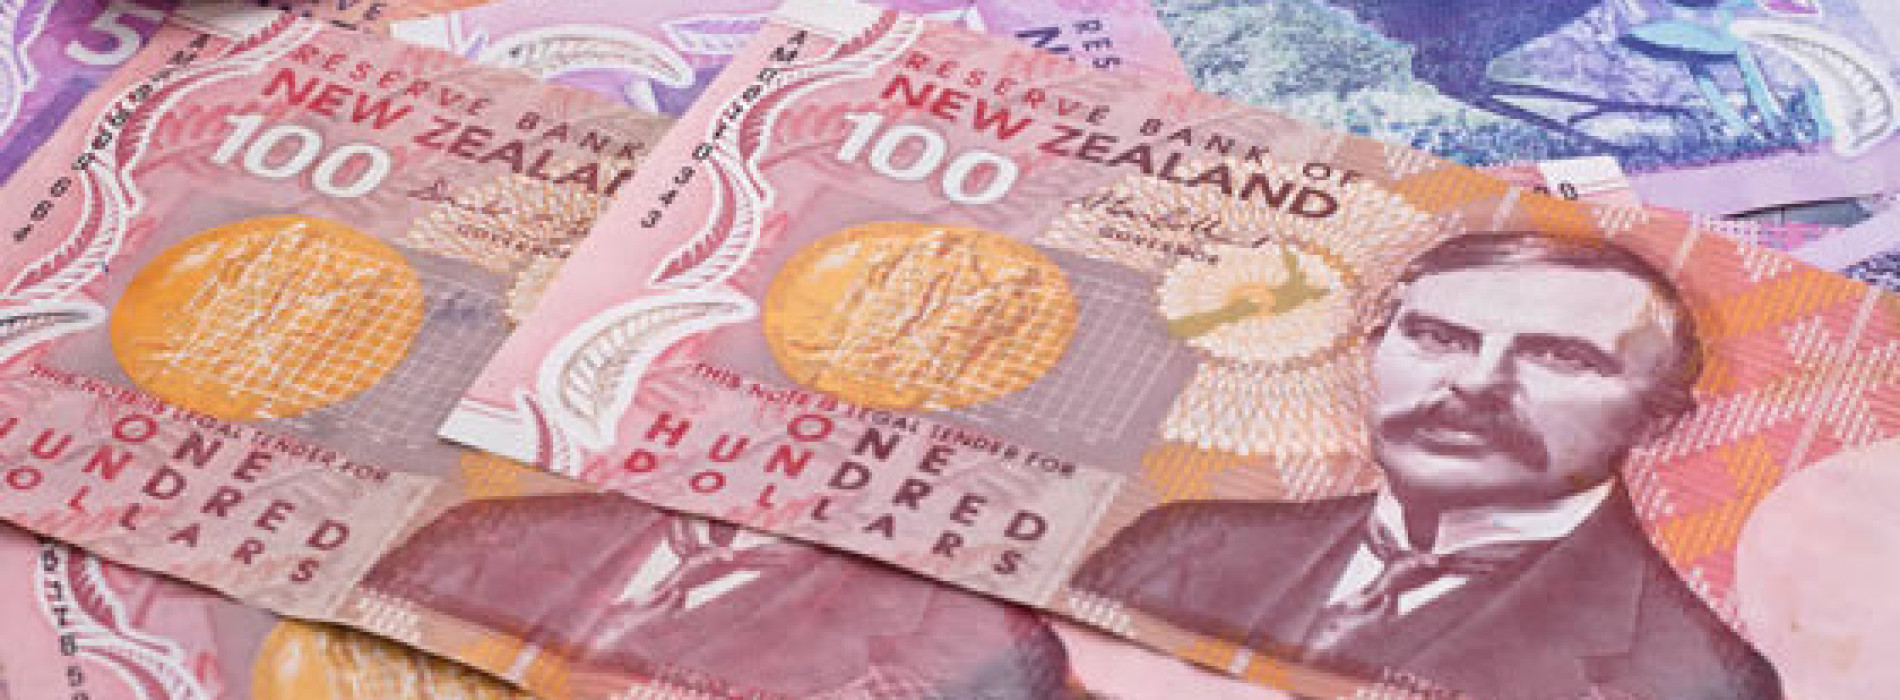 Dolar nowozelandzki traci po publikacji bilansu handlowego Chin